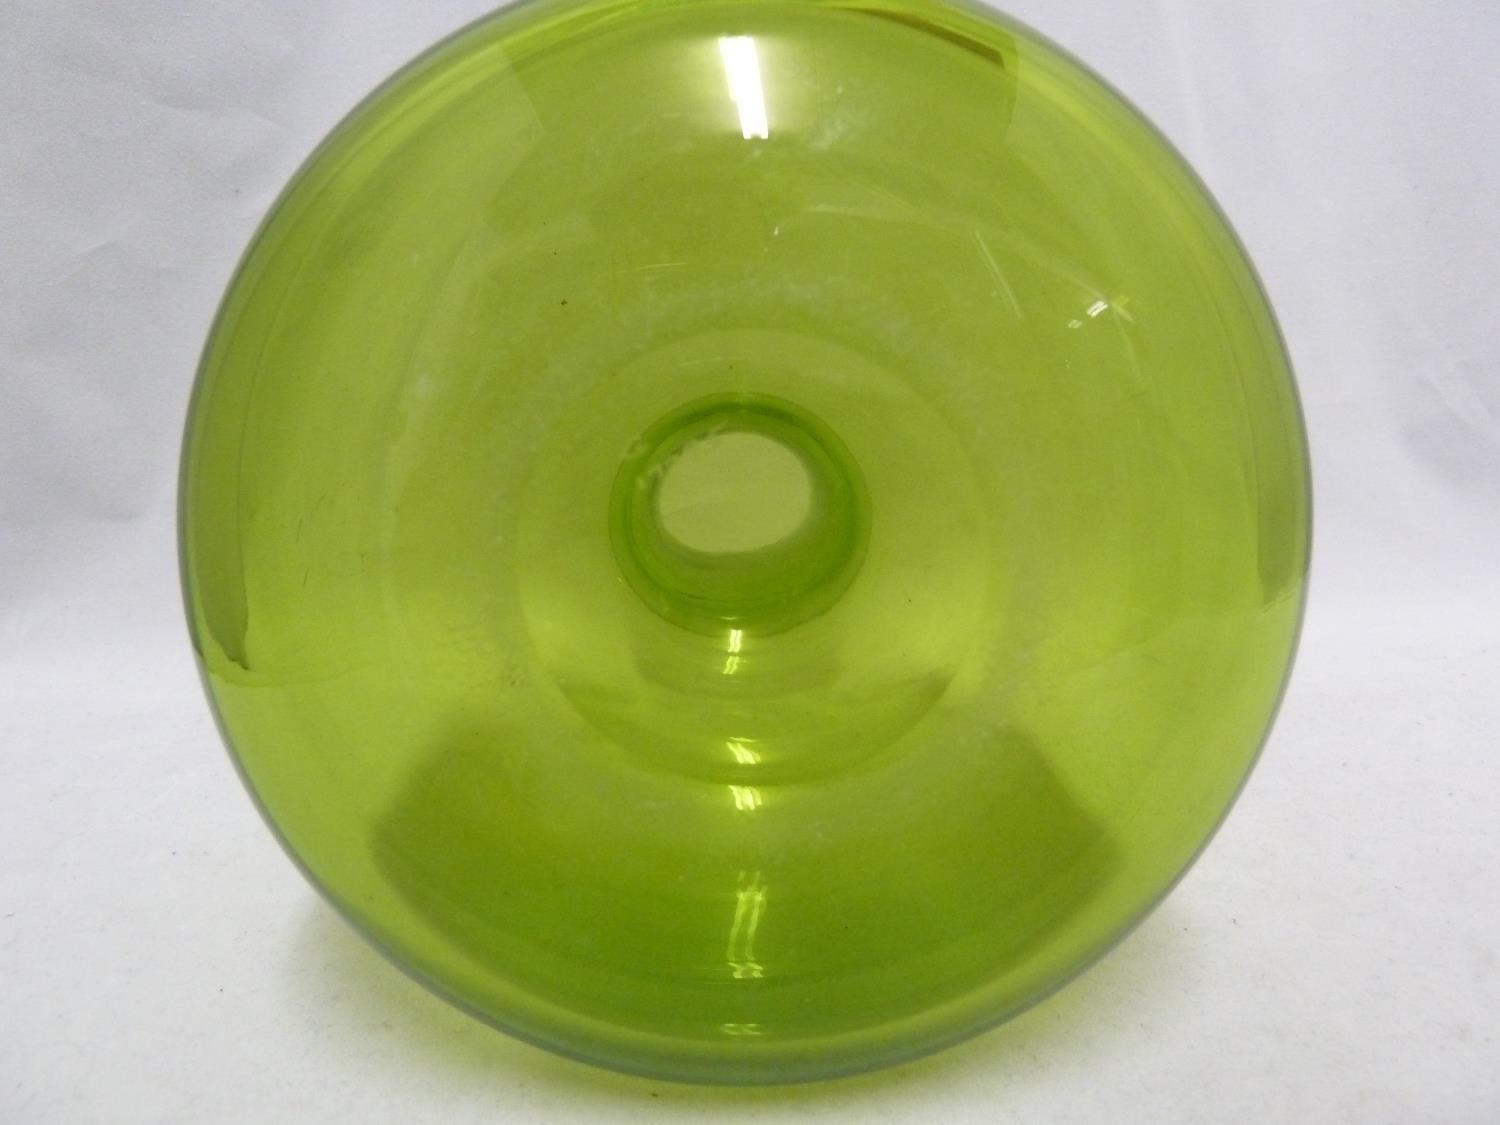 Per Lutkin /Christer Holmgren for Holmegaard - a Majgrøn / May Green glass bottle vase, engraved - Image 4 of 4